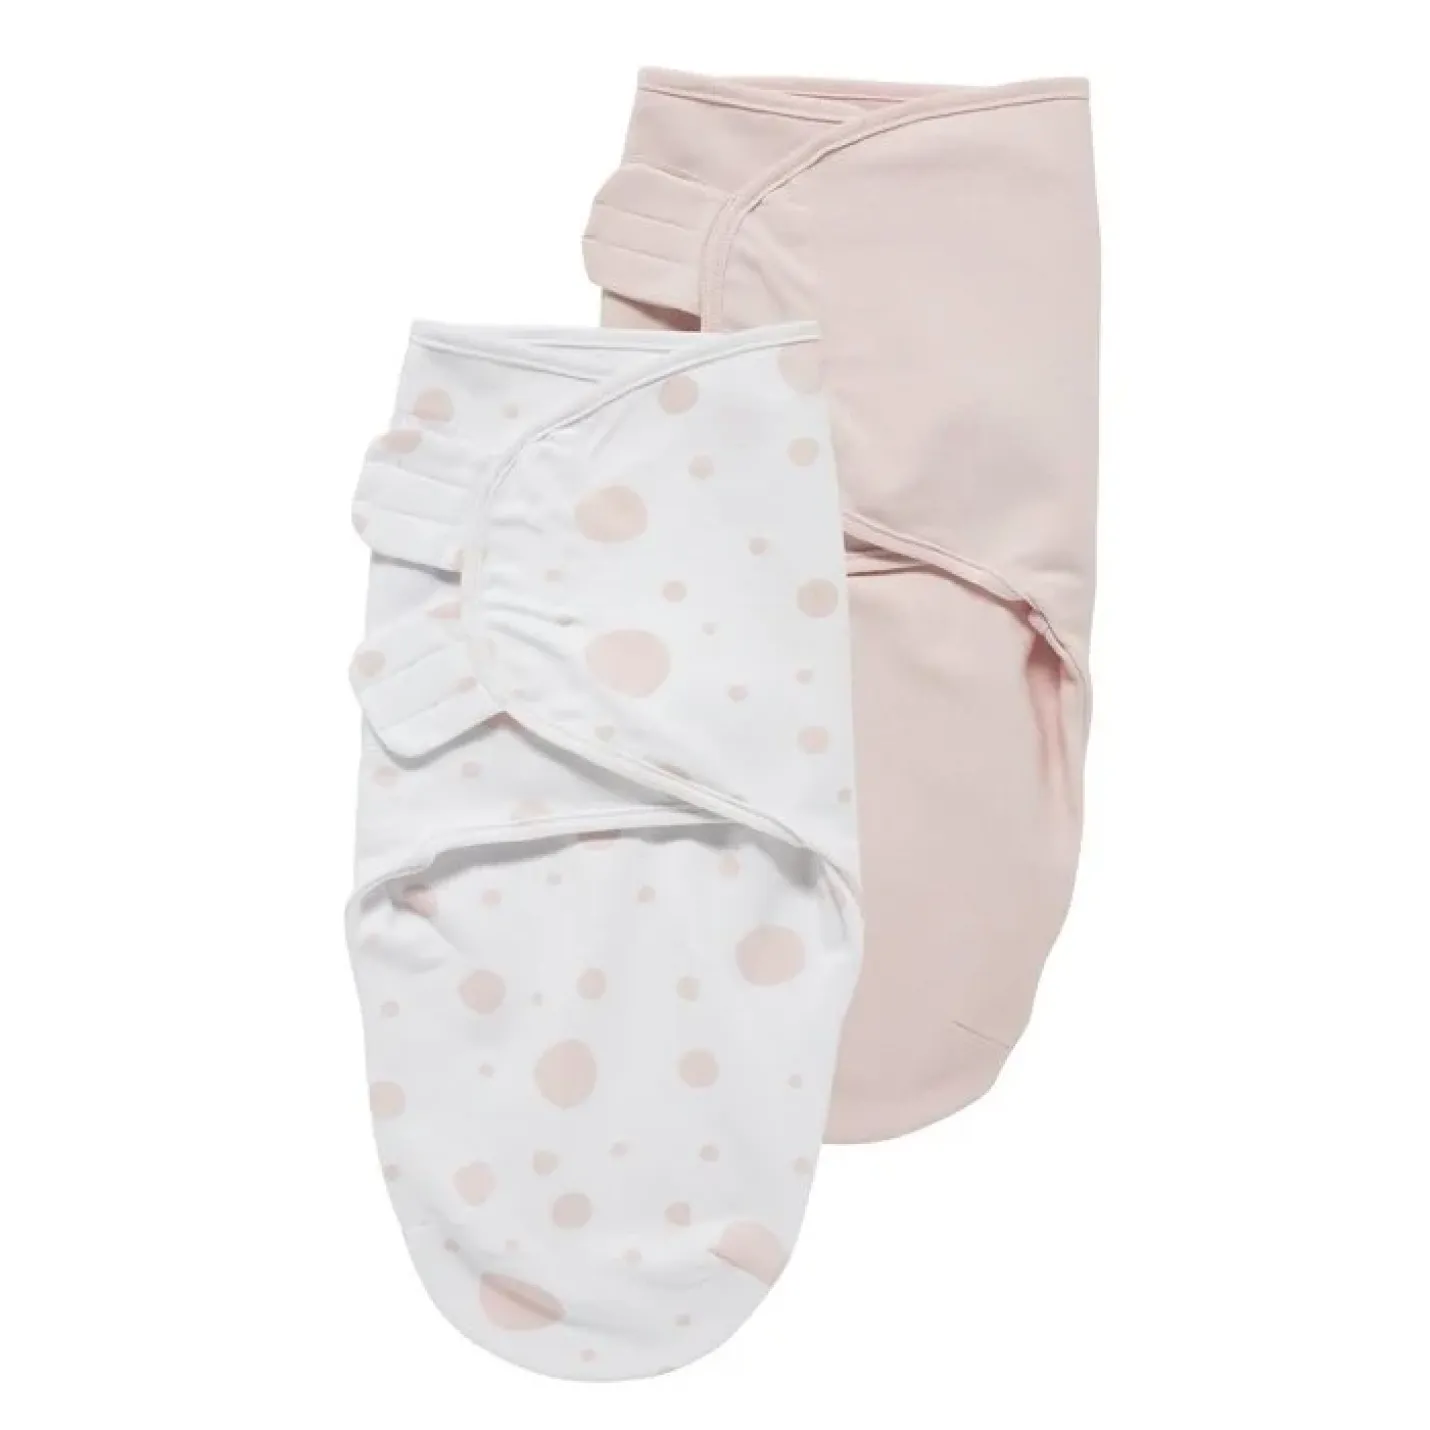 Swaddle Inbakerdoeken Dots ie een roze doek en witte doek met roze stippen om een baby in te bakeren met klittenband eraan